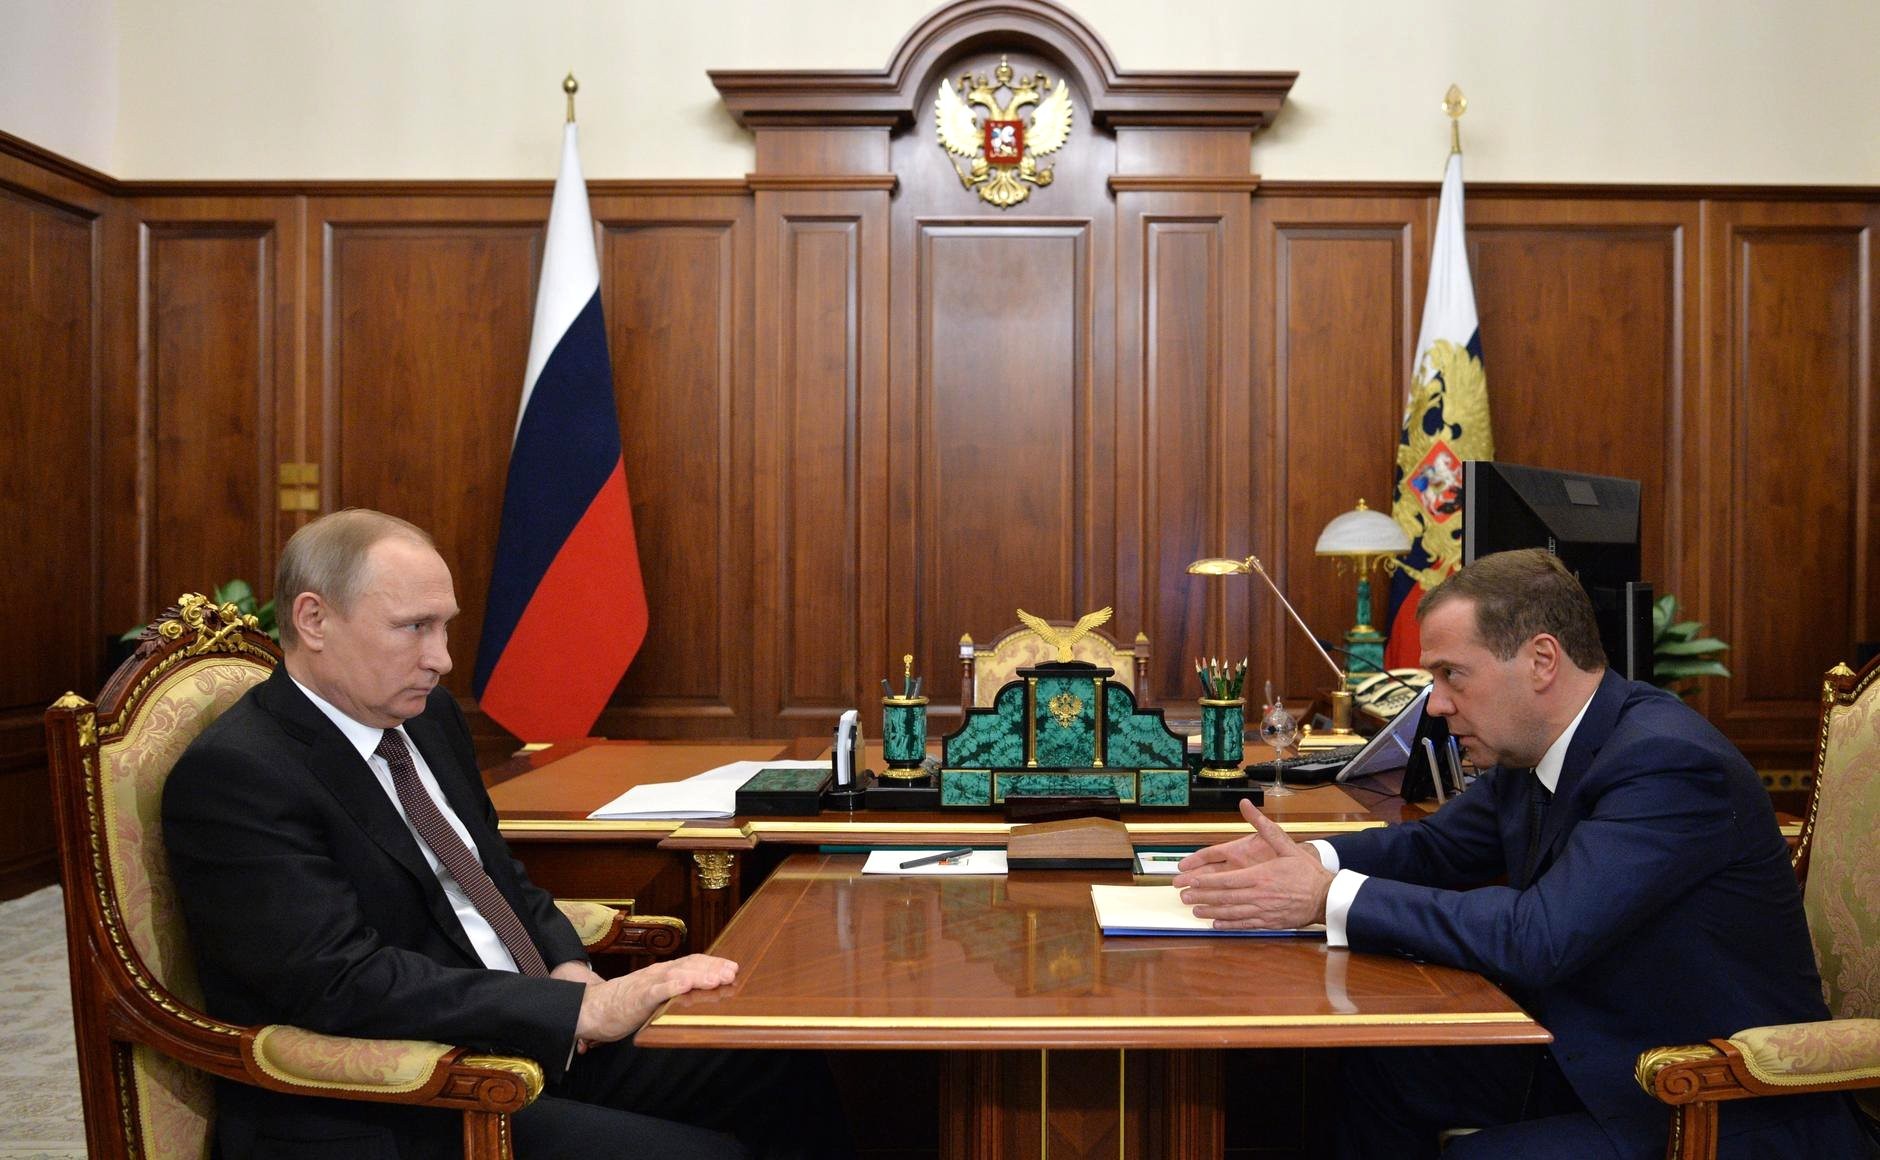 Medvedev: "Zelensky pagliaccio, nessuna trattativa con l'Ucraina se c'è lui"